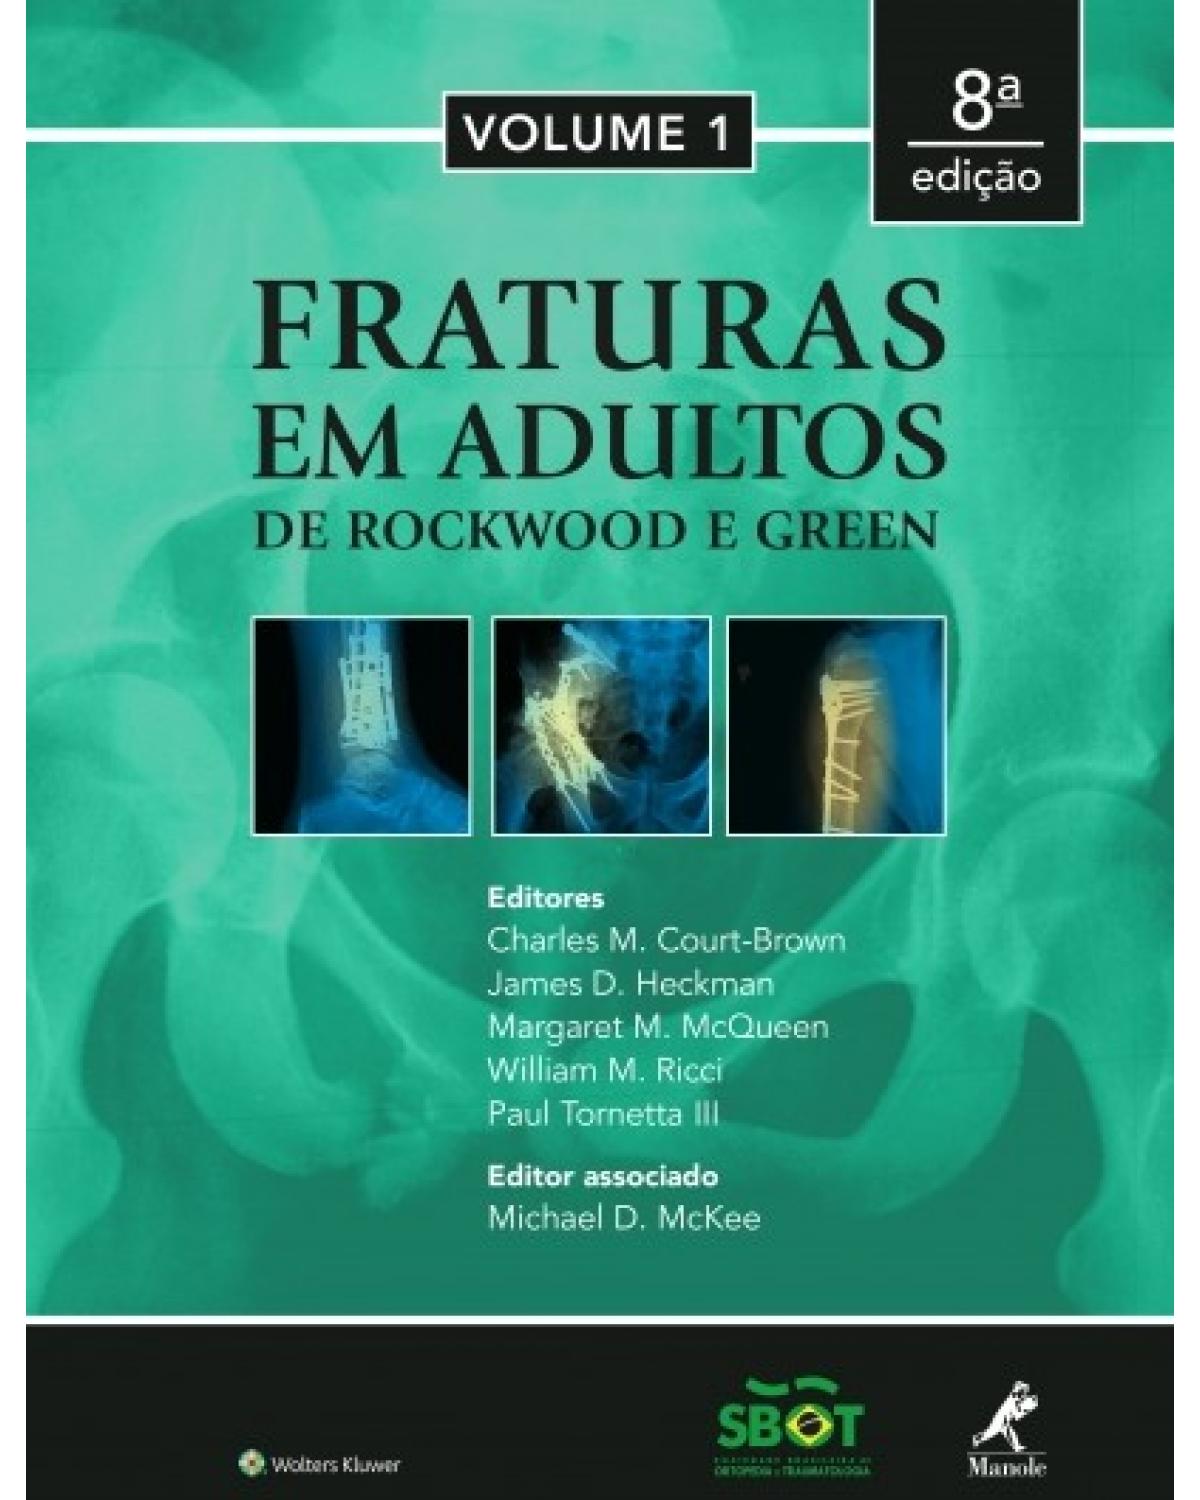 Fraturas em adultos - de Rockwood e Green - 8ª Edição | 2016